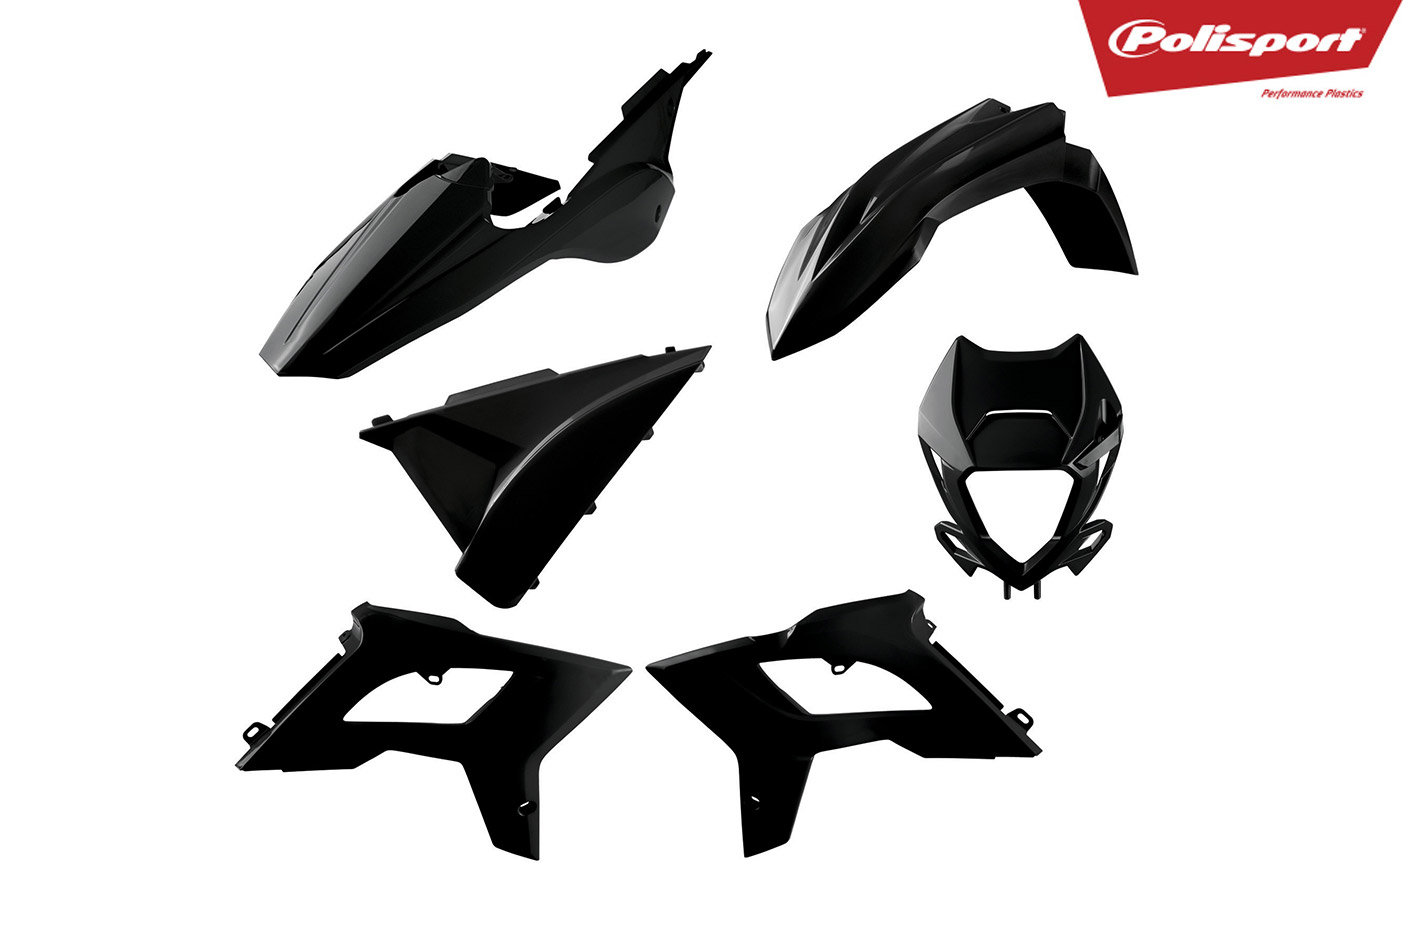 Plastikteile für deine Beta RR in schwarz, bestehend aus Frontkotflügel, Heckkotflügel, Tankspoiler, Lampenmaske und Seitenteilen